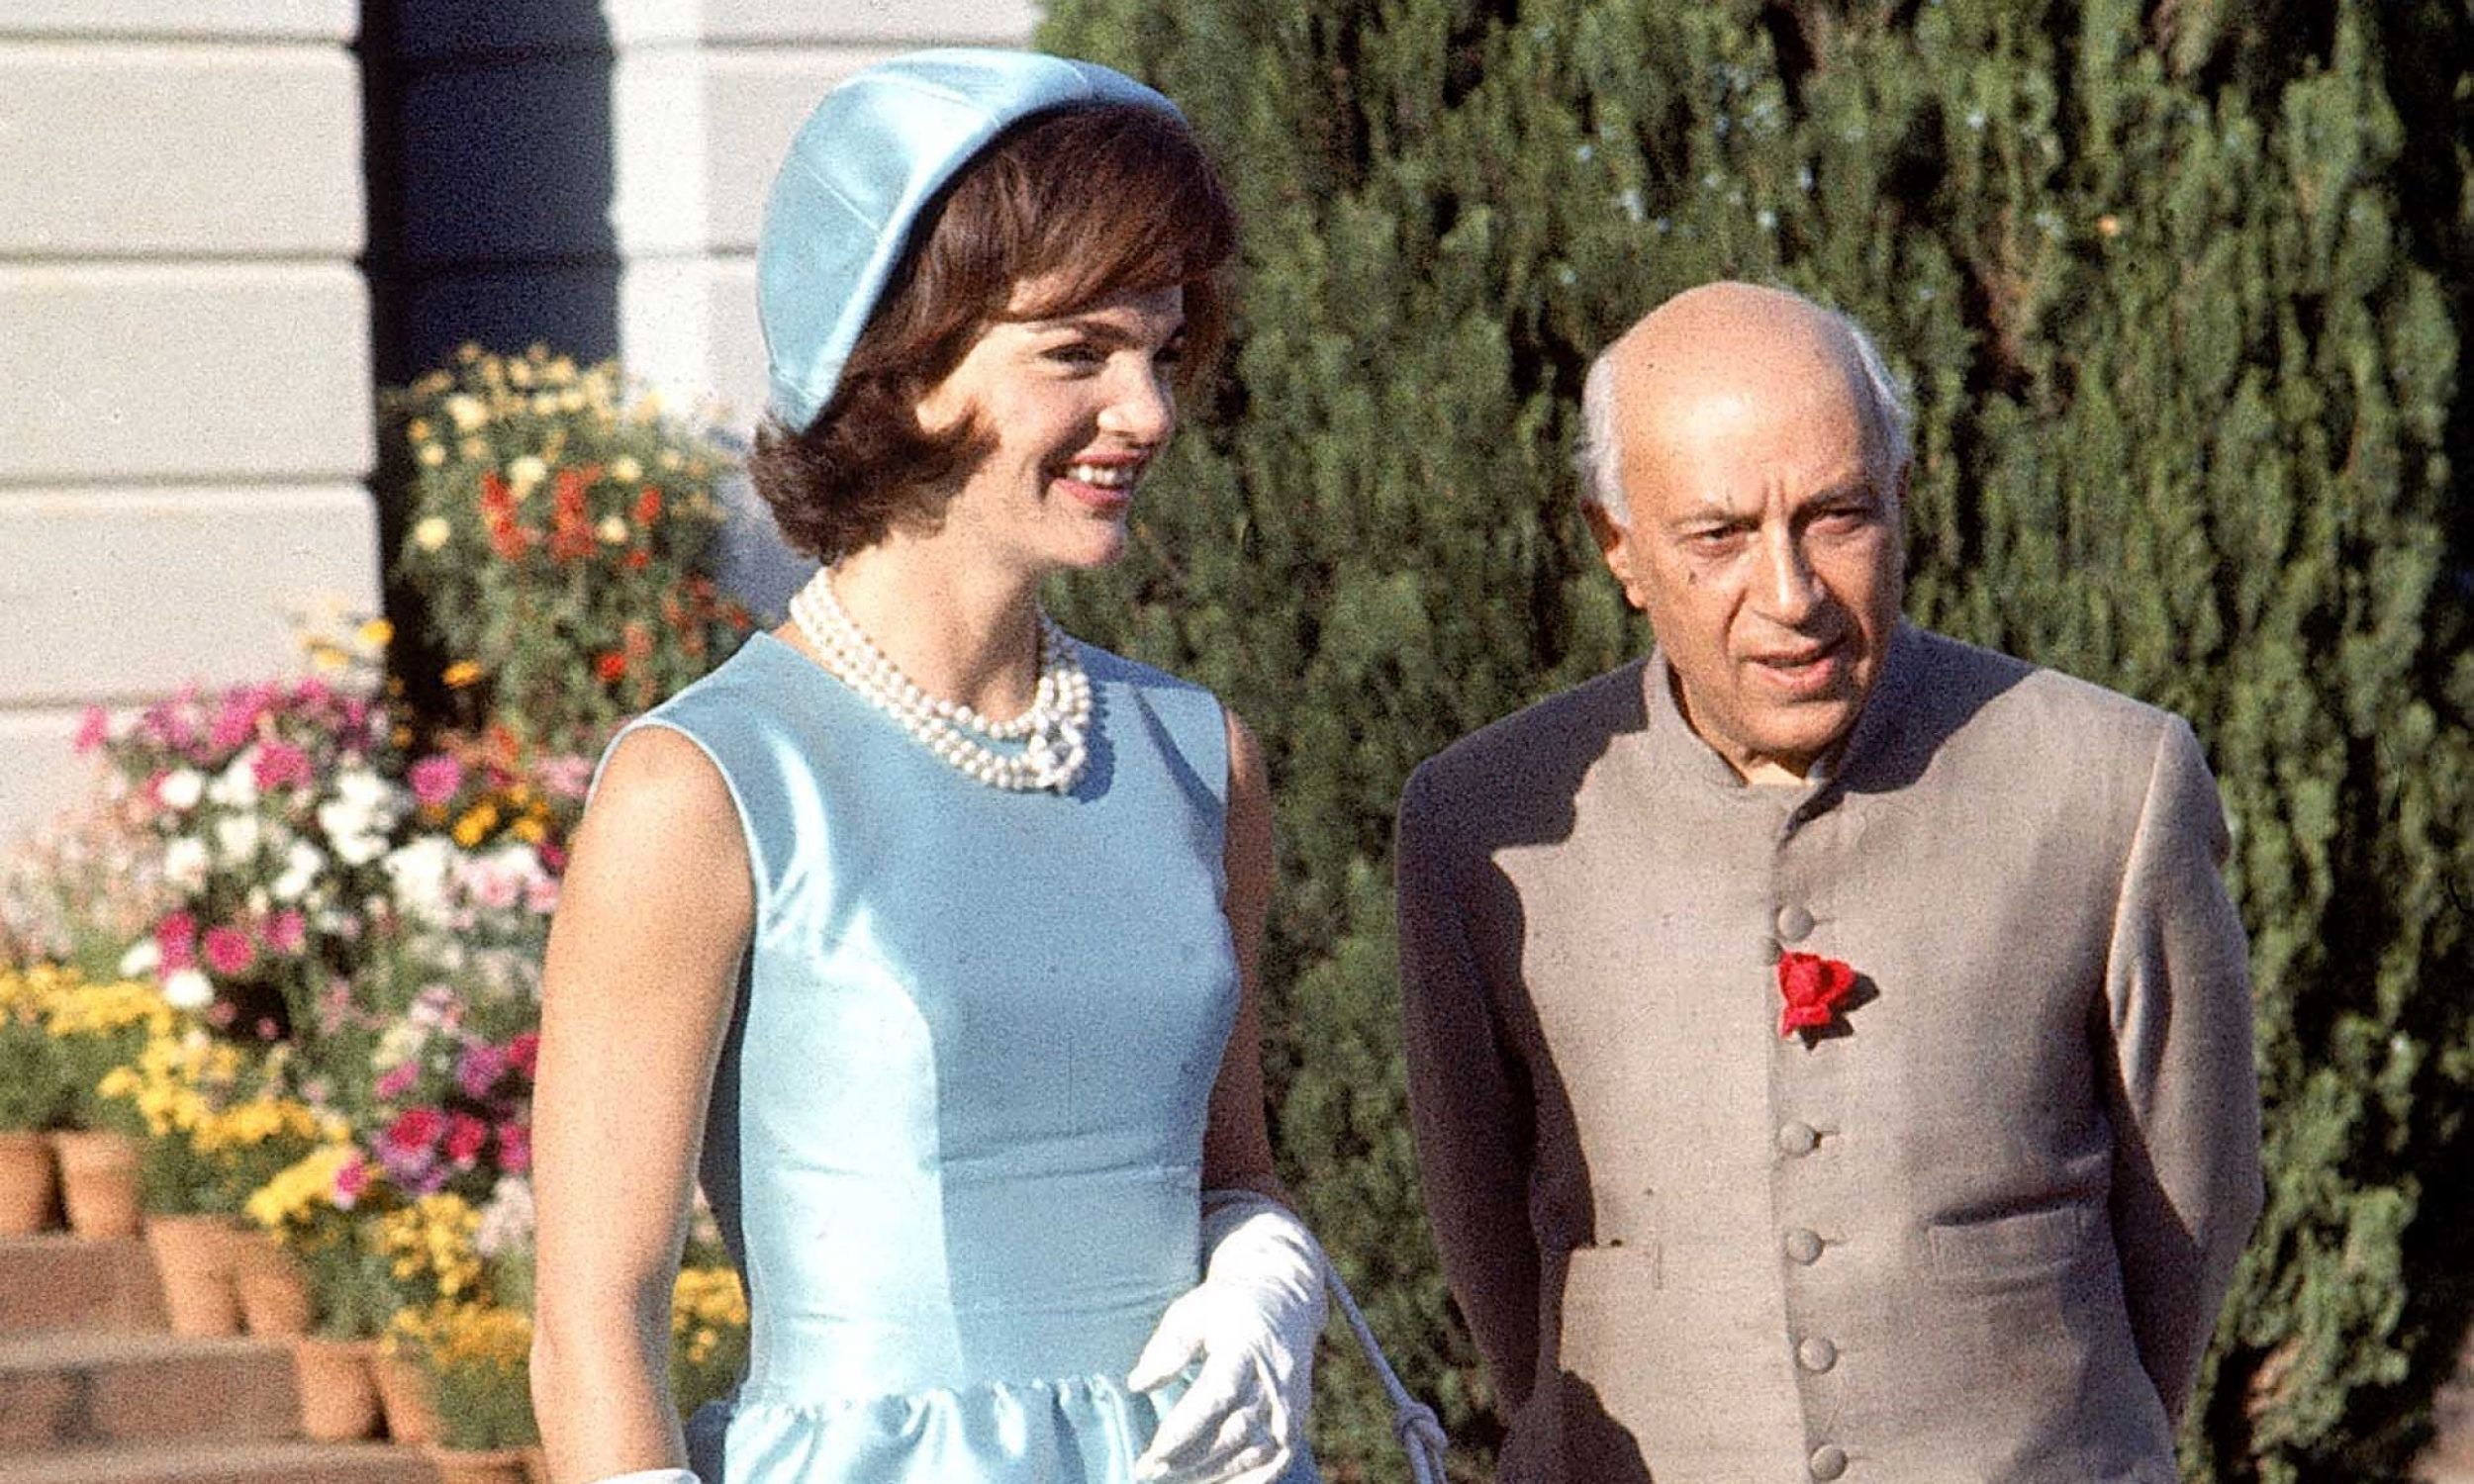 Zapoczątkowała modę na sukienki o szerokich ramiączkach i z wycięciem w łódkę. Na zdjęciu pierwsza dama Jackie Kennedy w niebieskiej sukience i kapeluszu spaceruje z premierem Indii Jawarhalalem Nehru w ogrodzie swojej rezydencji, w 1962 r. Fot. Art Rickerby / The LIFE Picture Collection via Getty Images